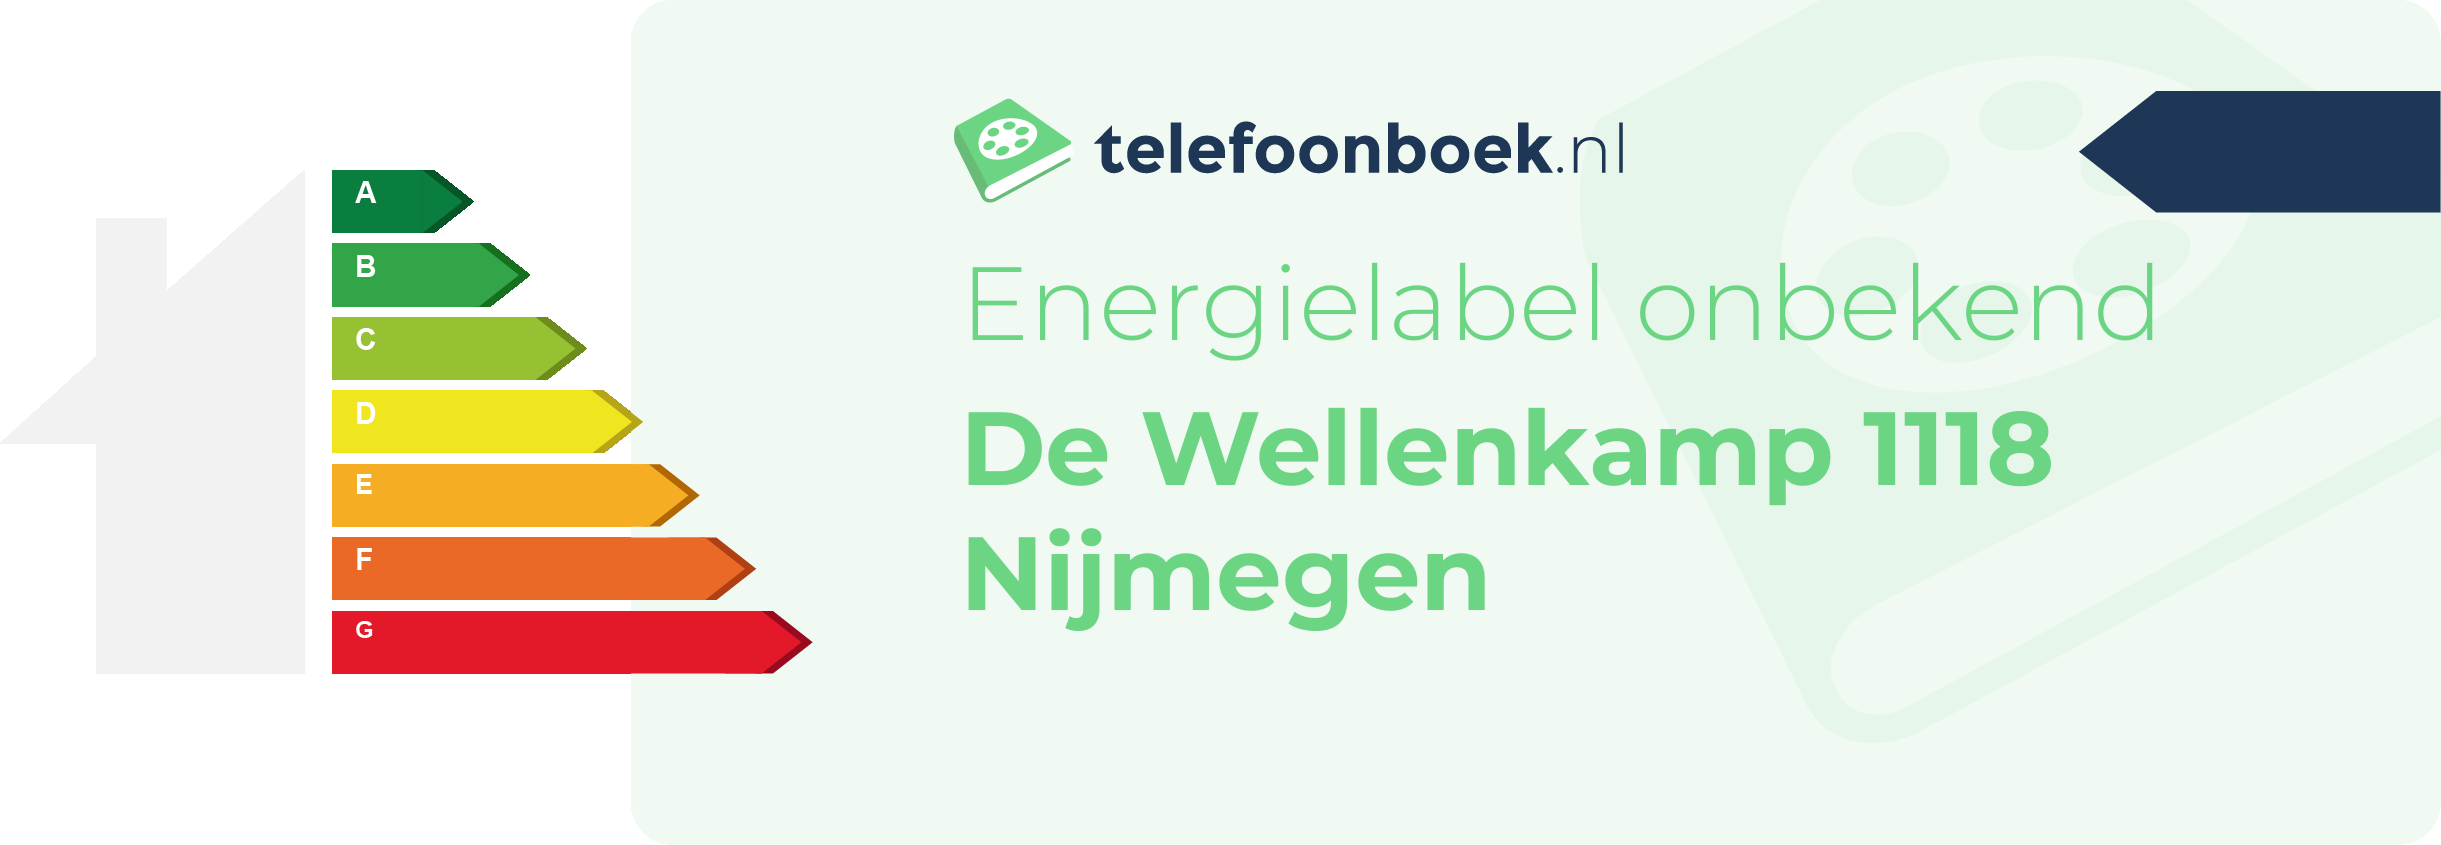 Energielabel De Wellenkamp 1118 Nijmegen